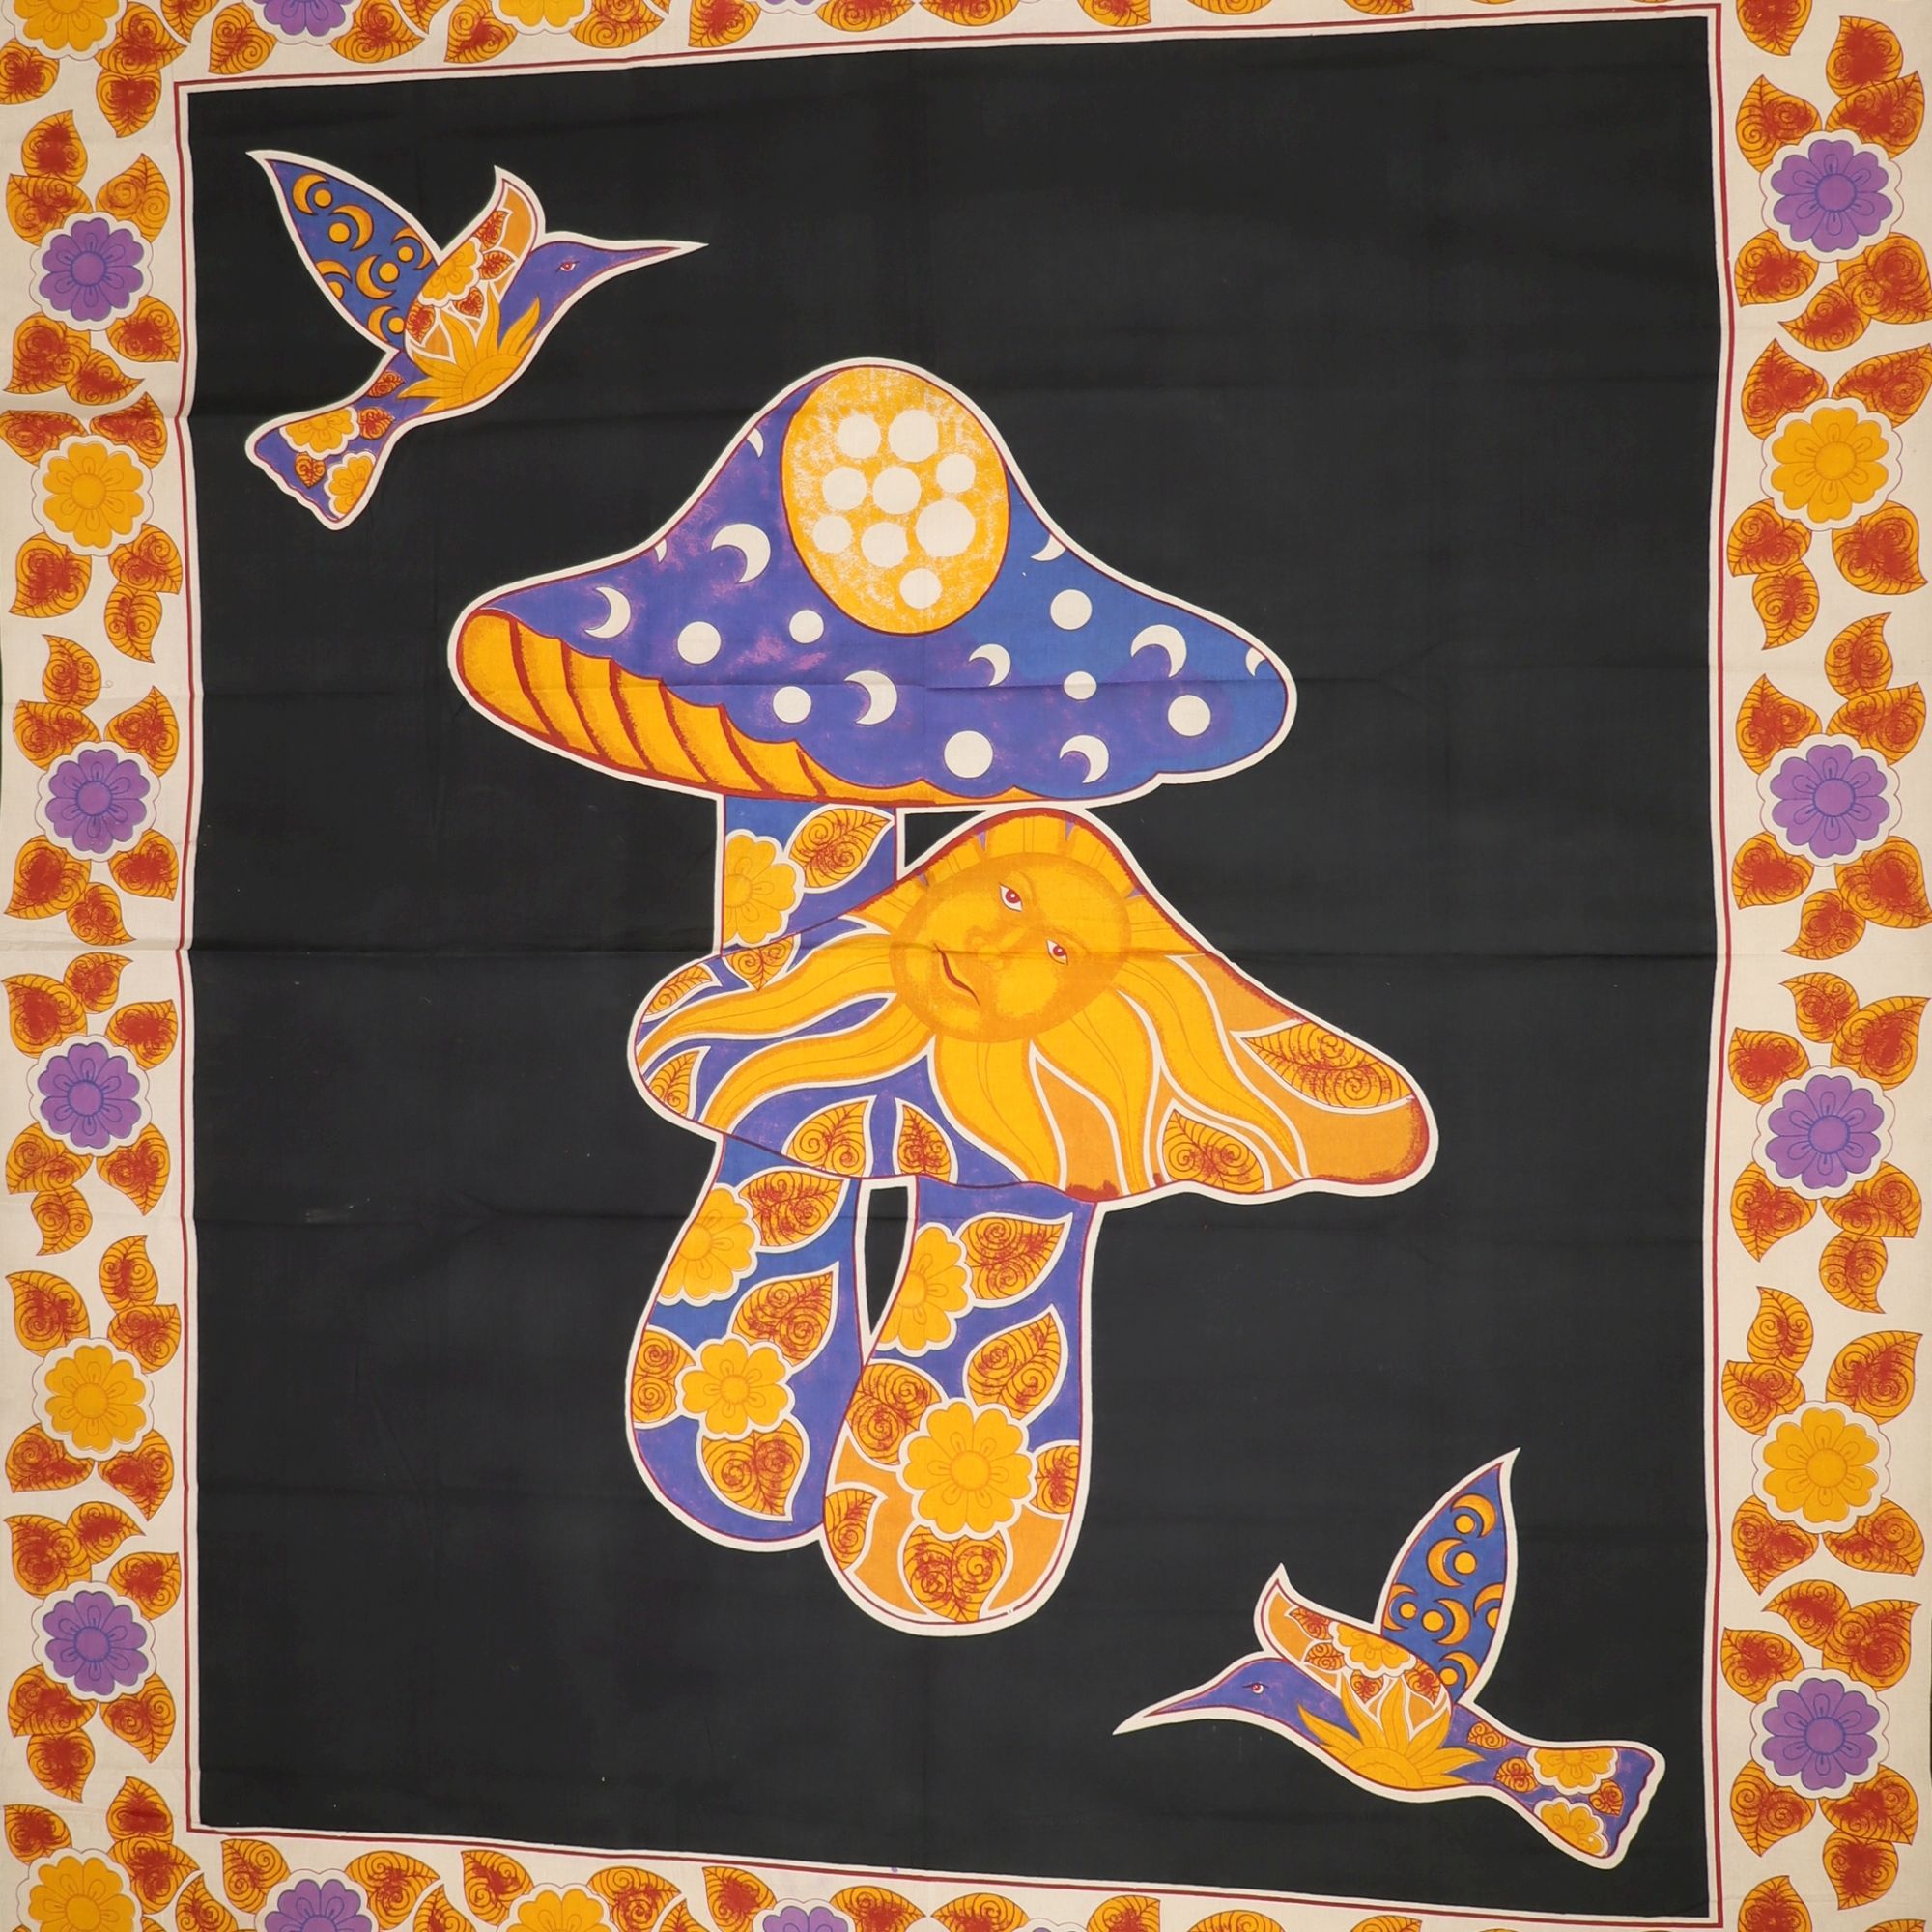 Wandtuch XXL 210x230 - Pilze und Vögel - 100% Baumwolle - detailreicher indischer Druck - mehrfarbig - dekoratives Tuch, Wandbild, Tagesdecke, Bedcover, Vorhang, Picknick-Decke, Strandtuch